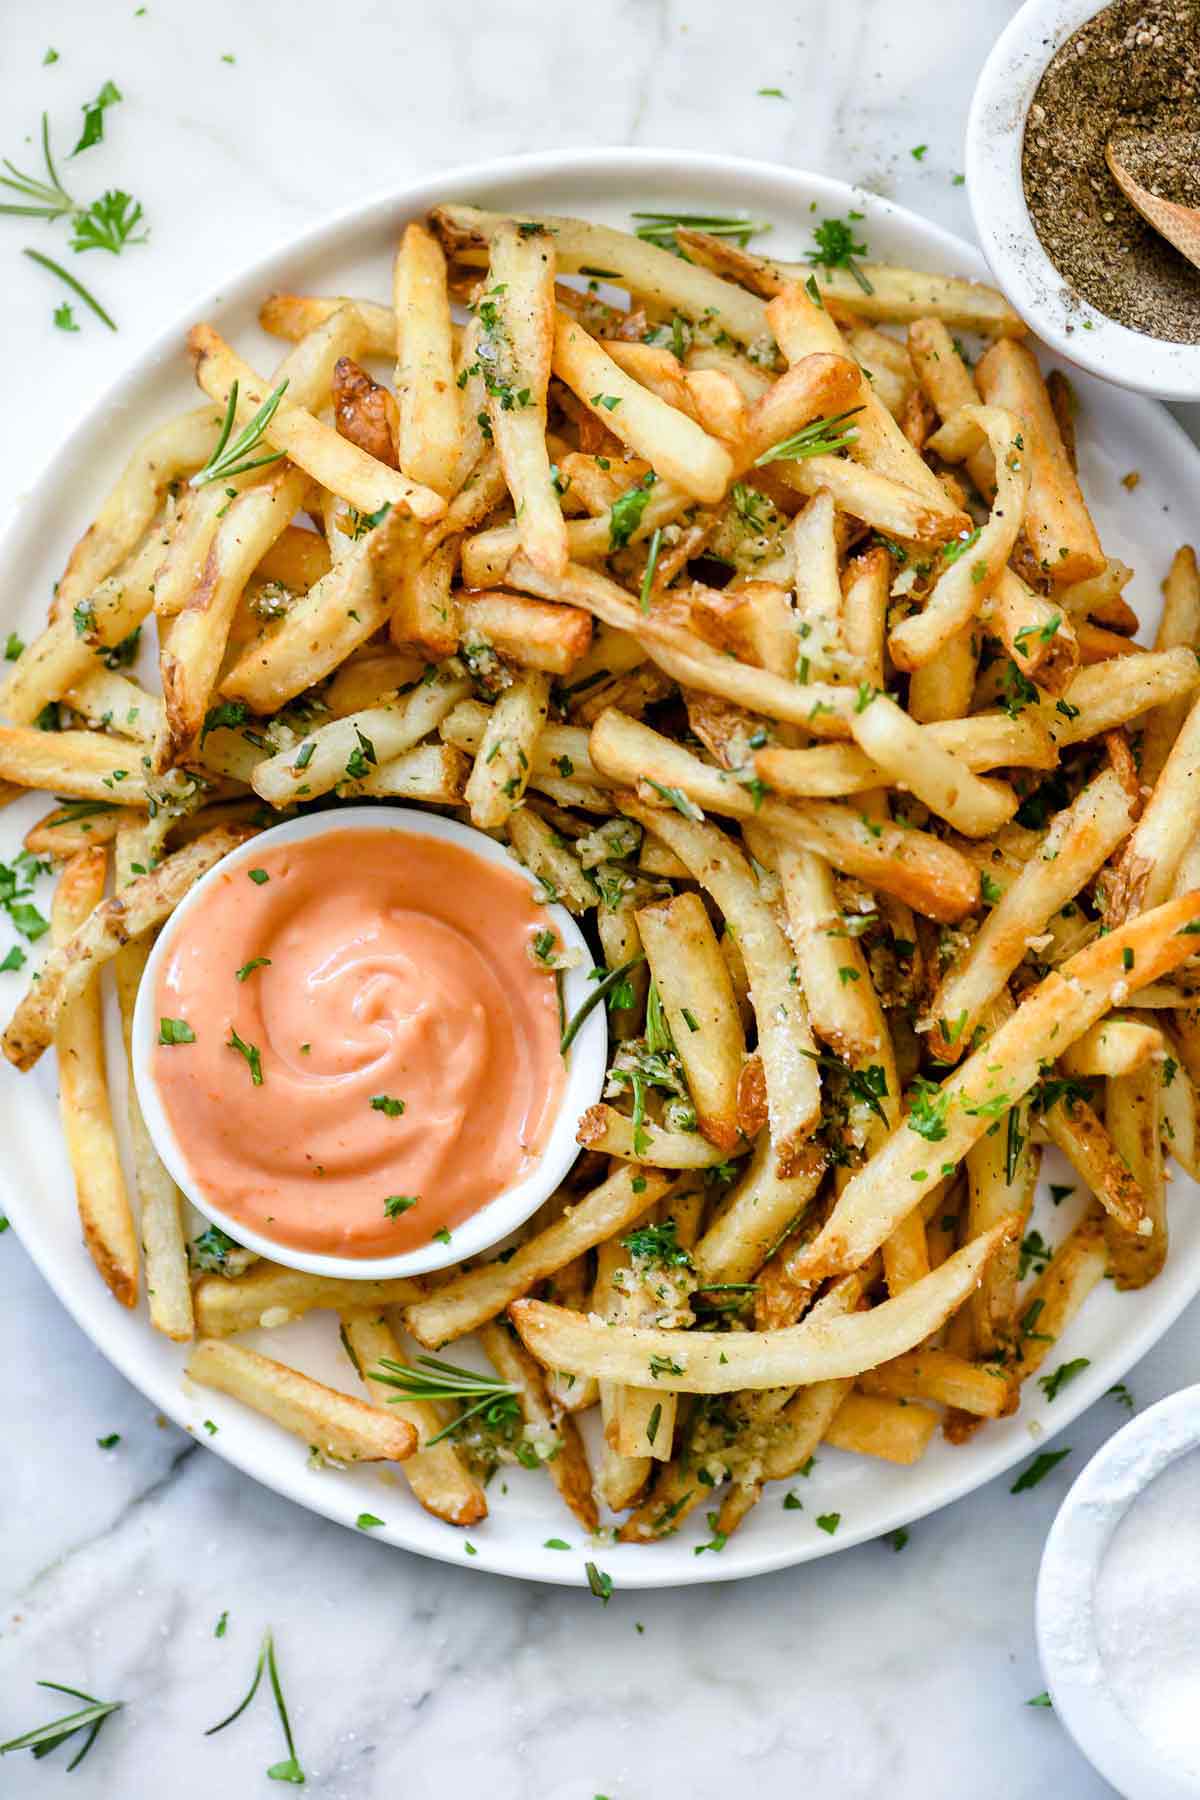 https://www.foodiecrush.com/wp-content/uploads/2018/04/Killer-Rosemary-Garlic-Fries-foodiecrush.com-010.jpg